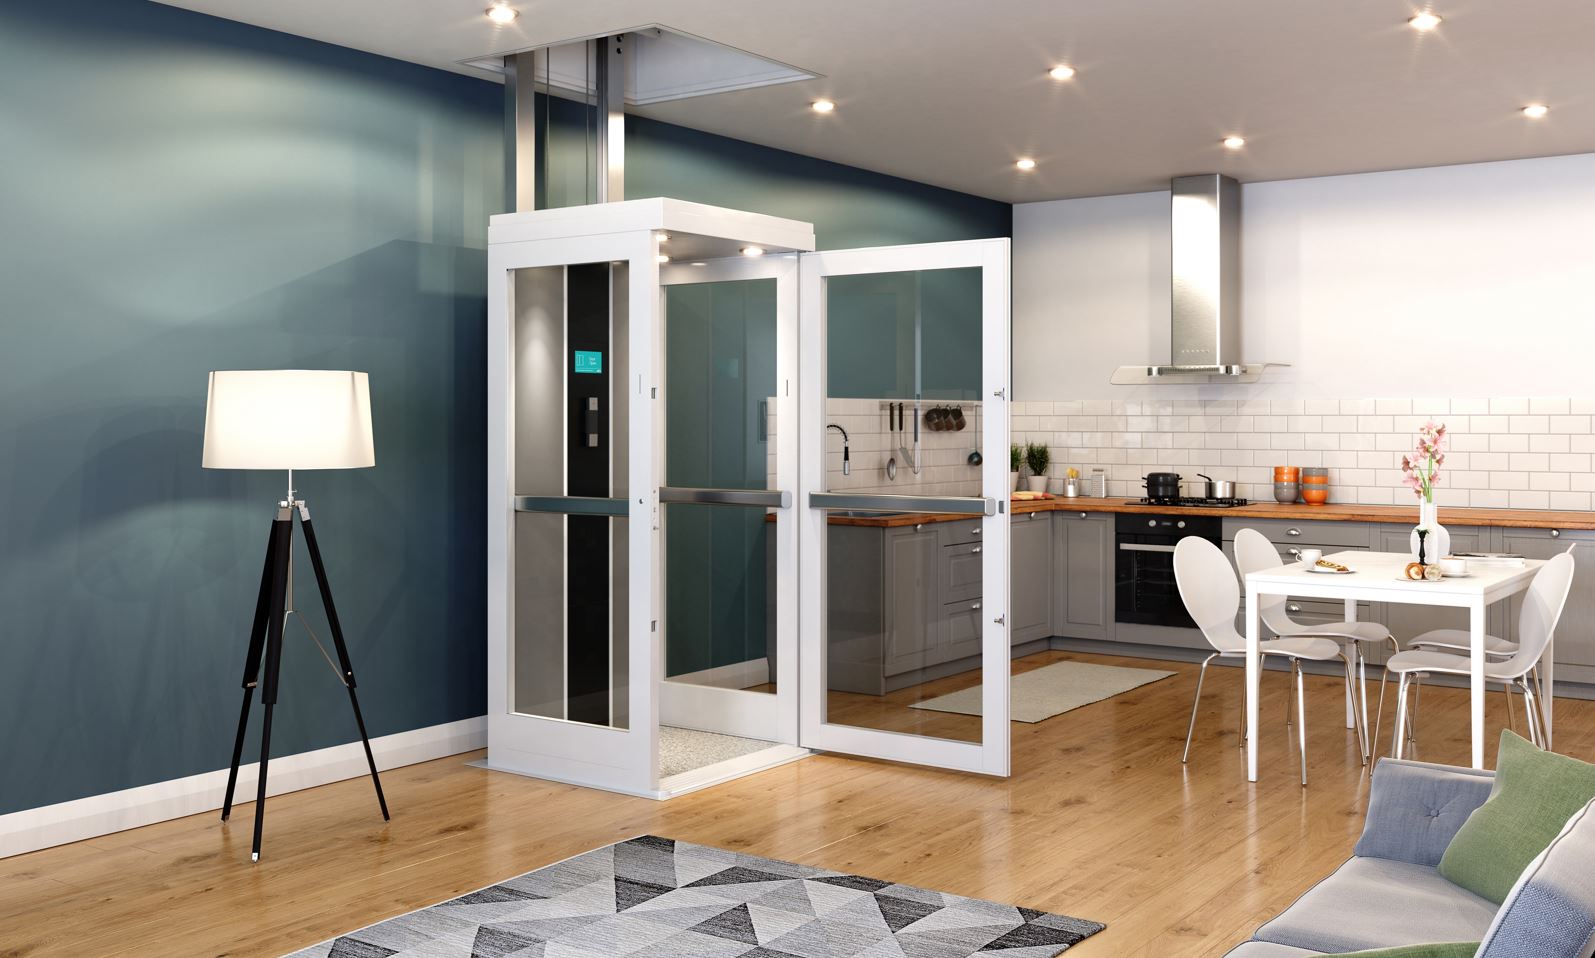 Bruno Connect Through floor home elevator with door open in kitchen